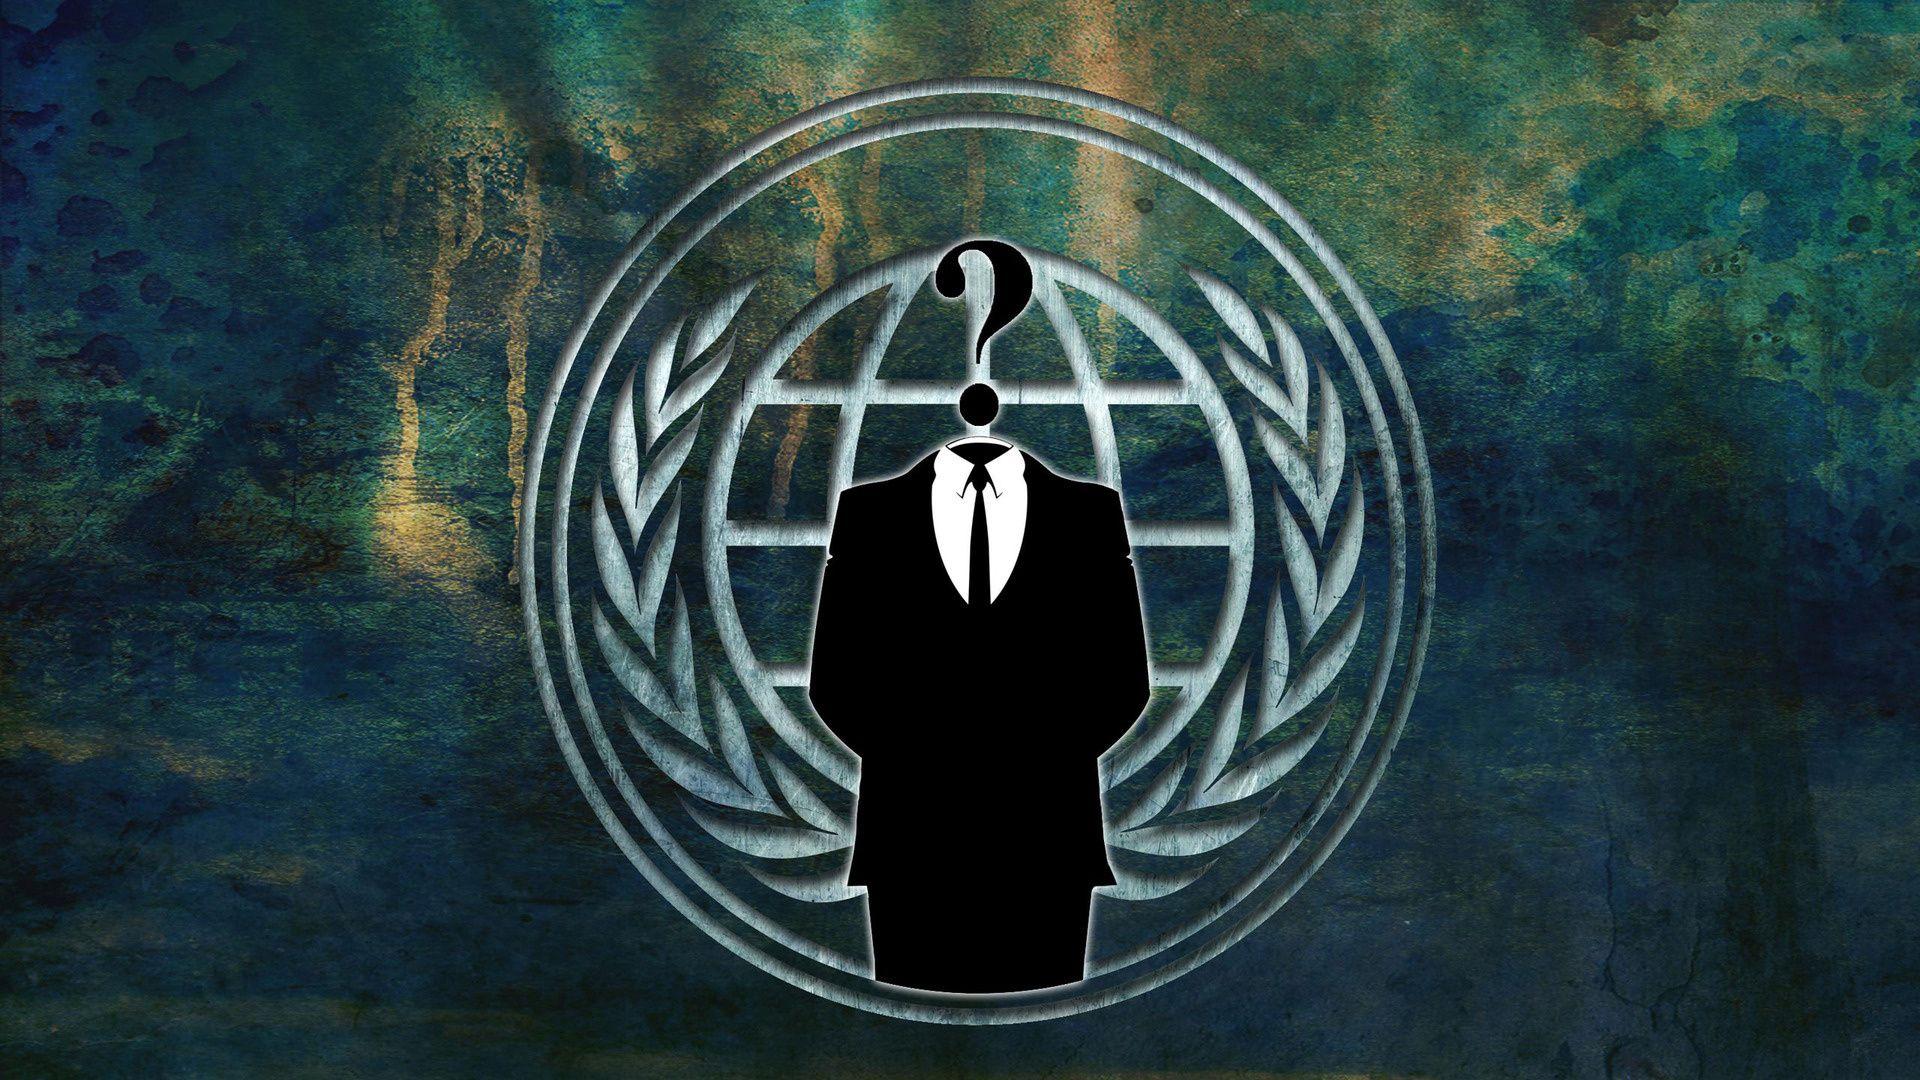 Anonymous HD Wallpaperx1080. Anonymous 6. Logo